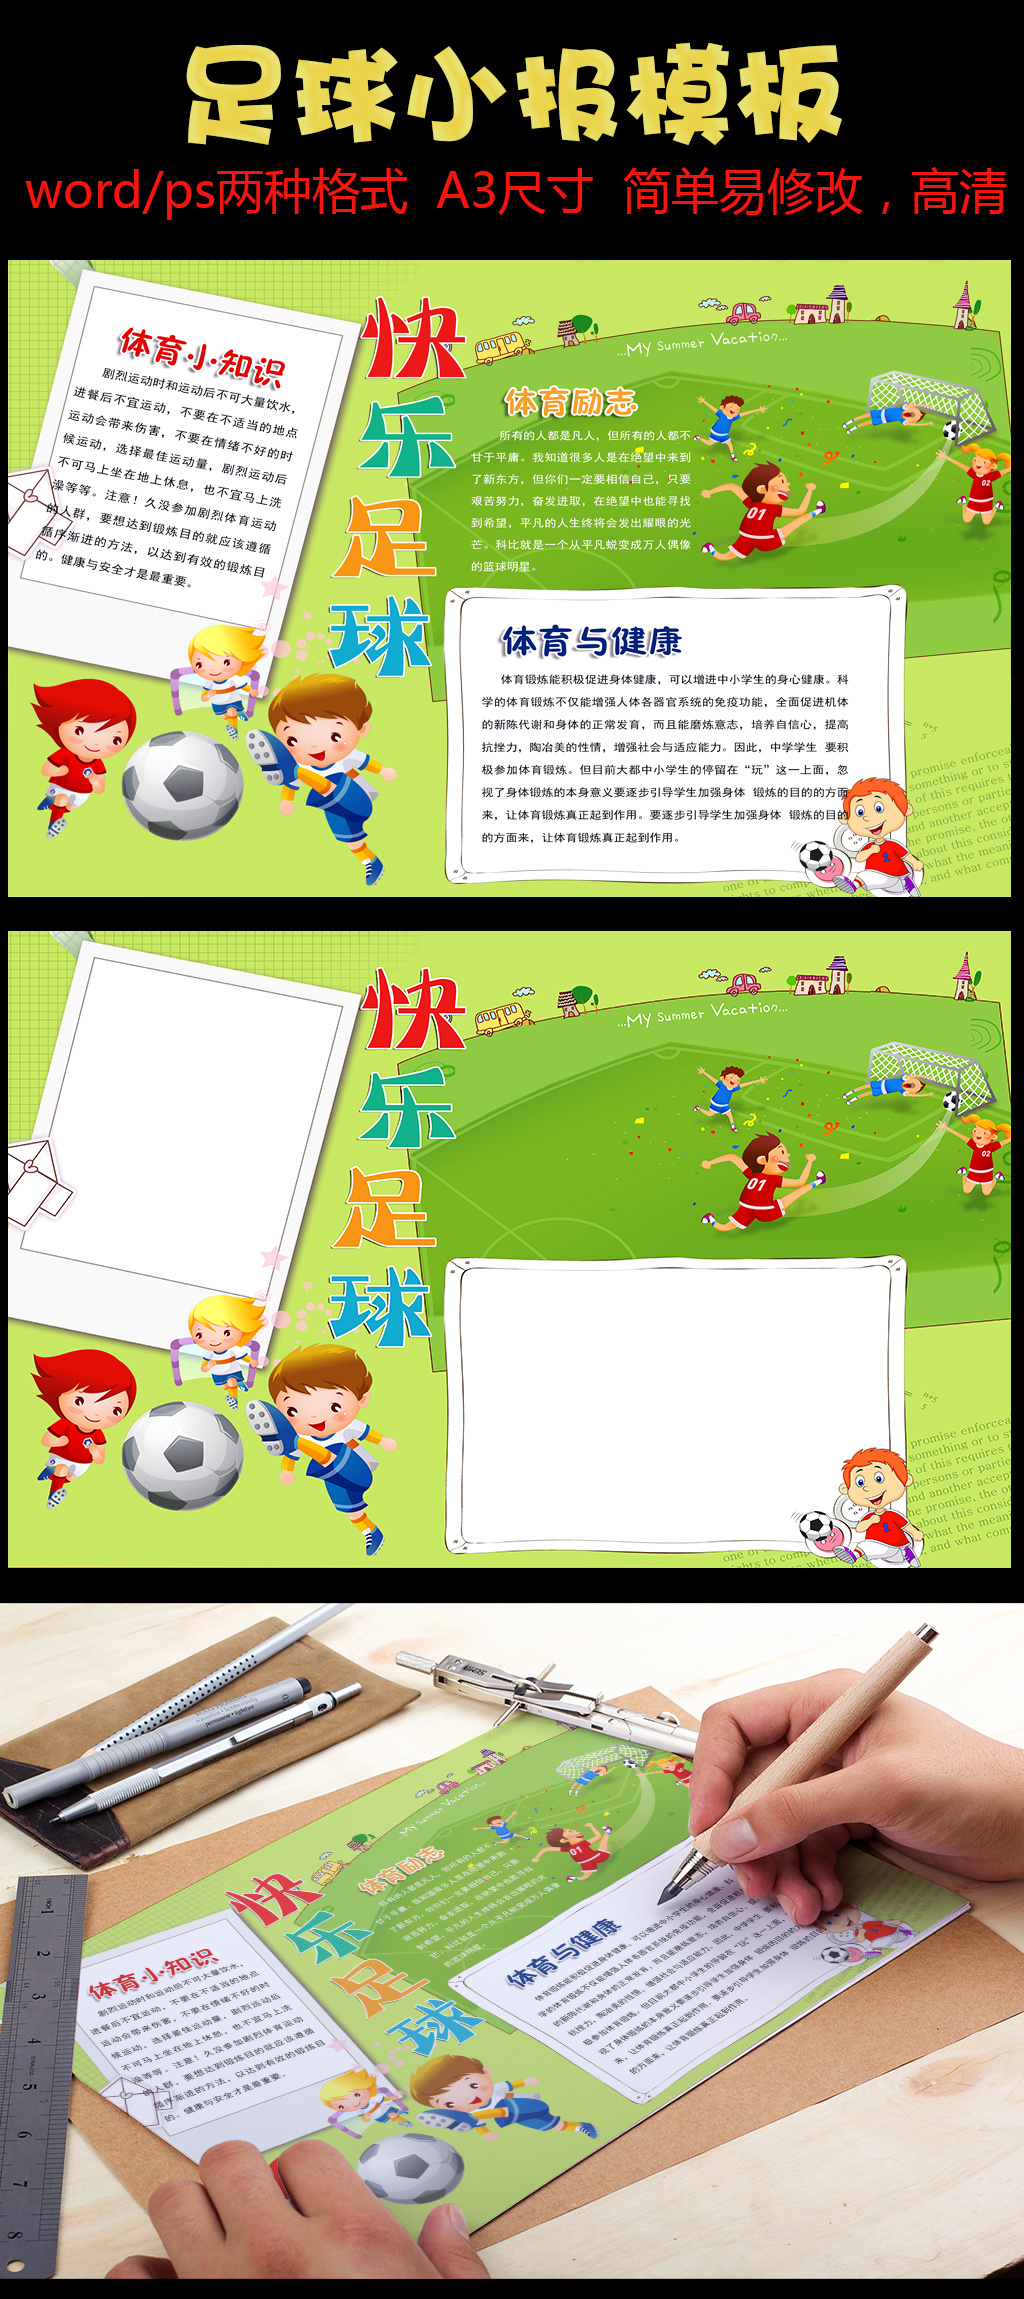 卡通快乐足球手抄报模板图片设计素材_高清P